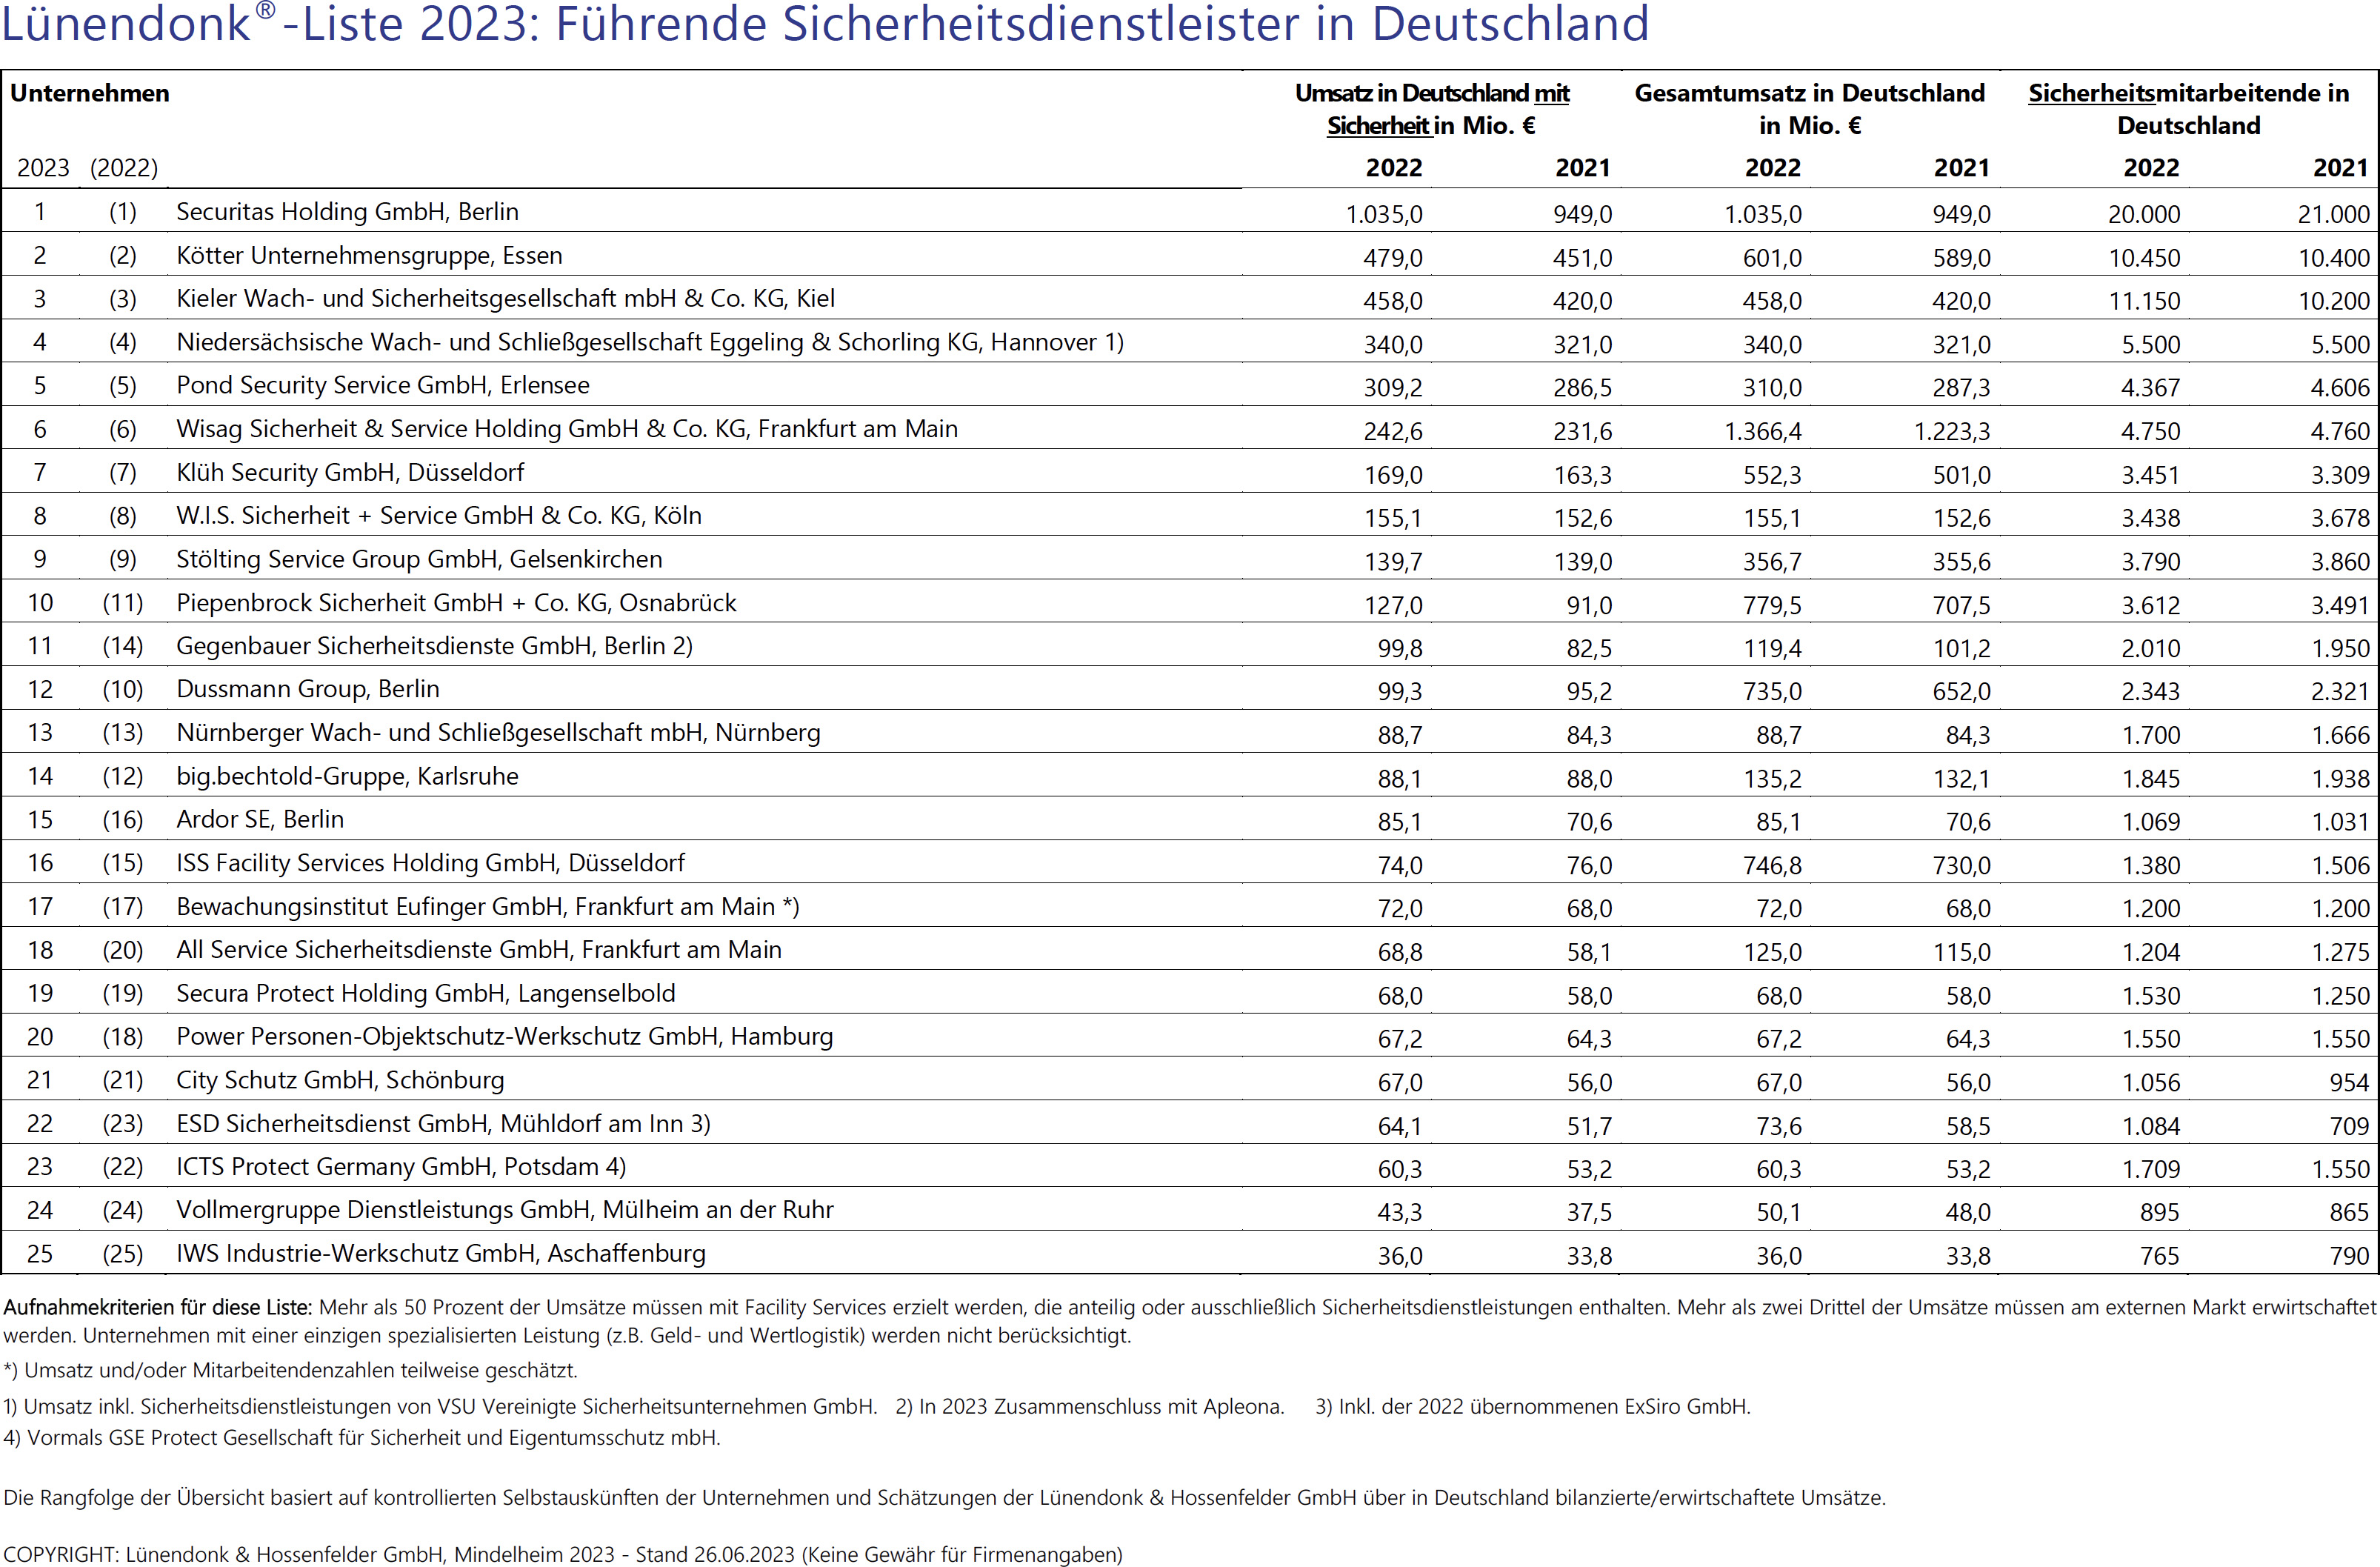 Lünendonk-Liste 2023: Führende Sicherheitsdienstleister in Deutschland